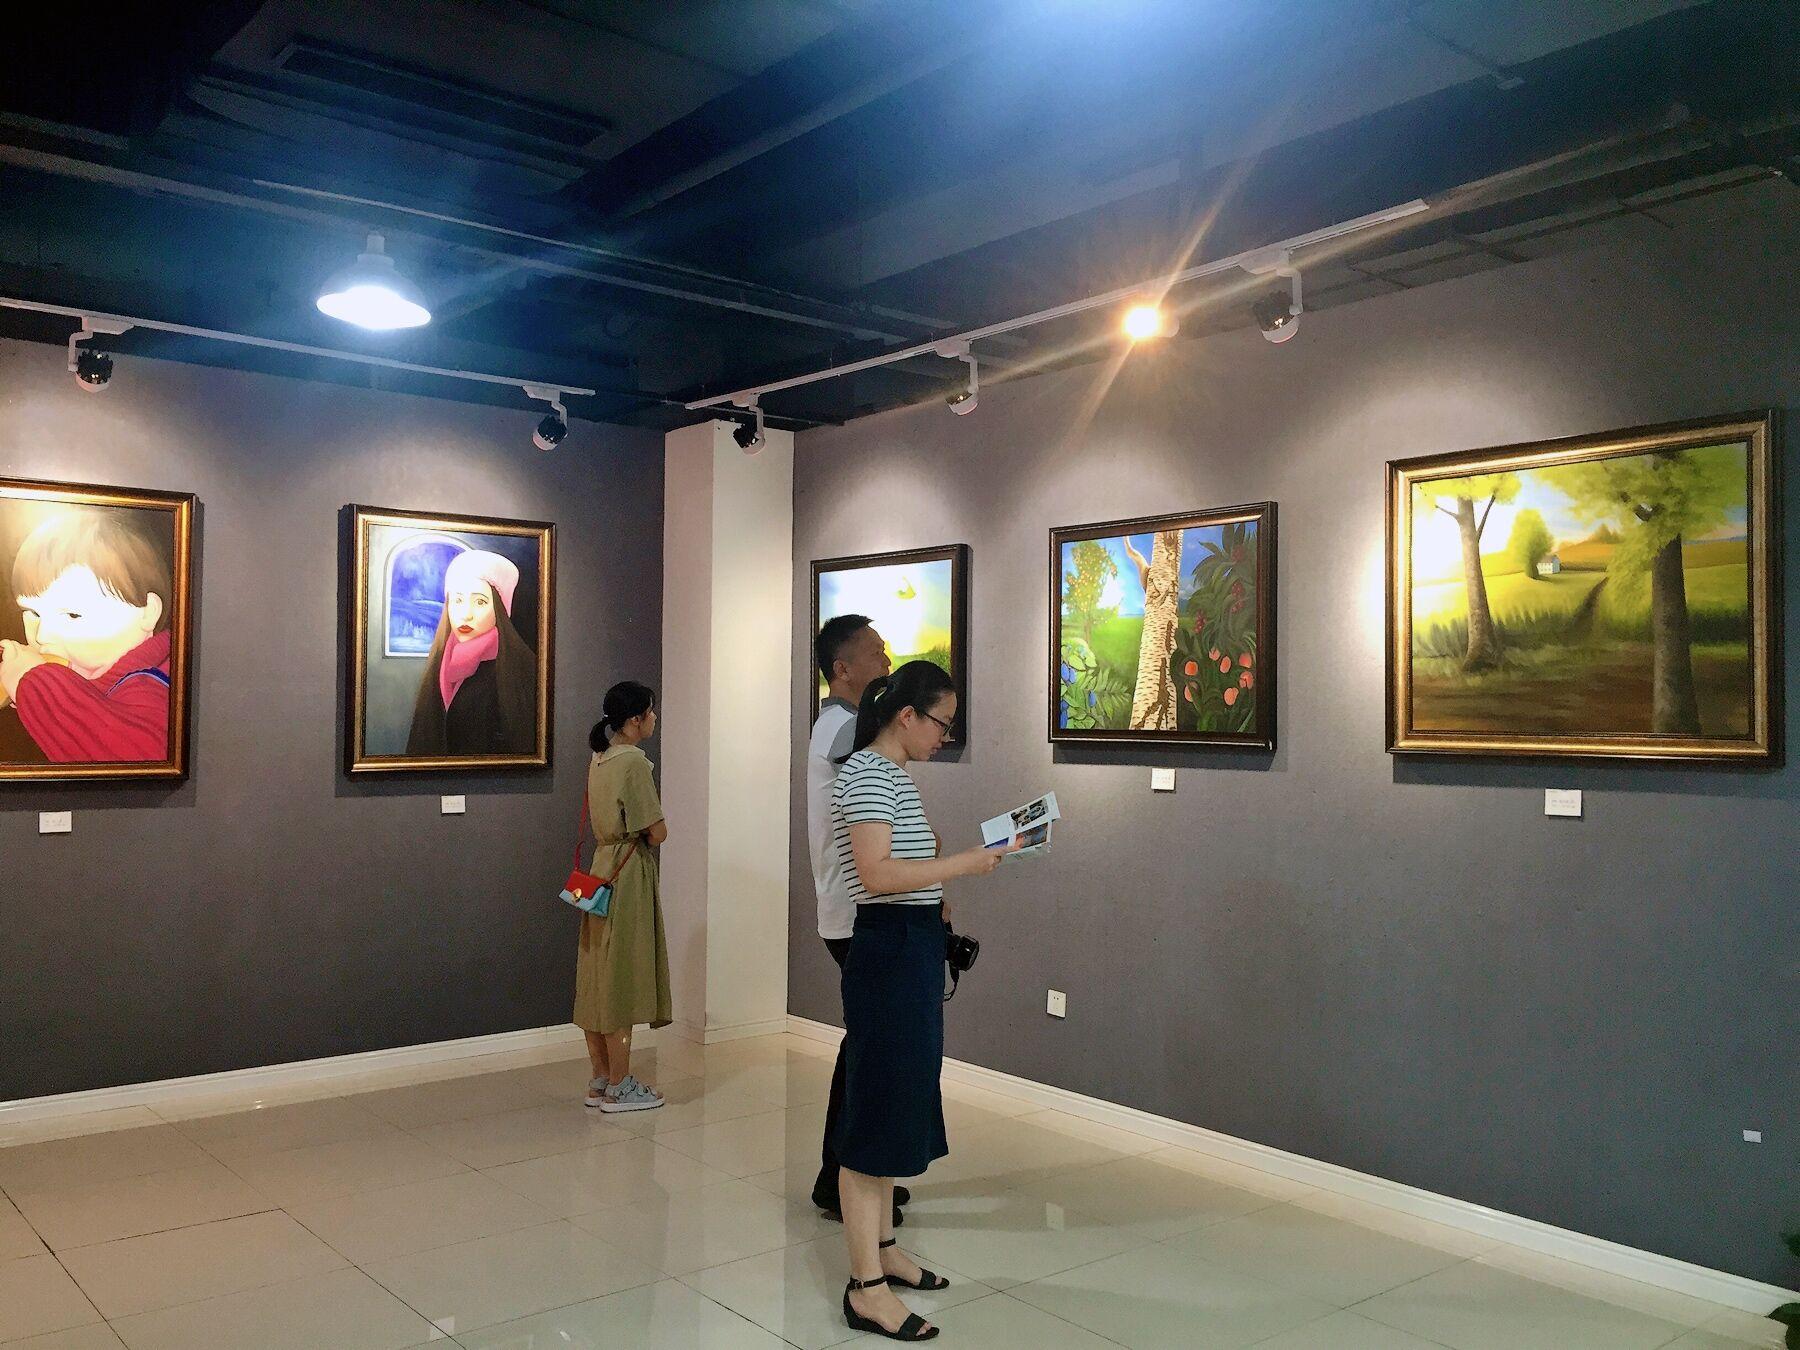 清静的表现——德国画家罗兰特油画作品展在南京开幕